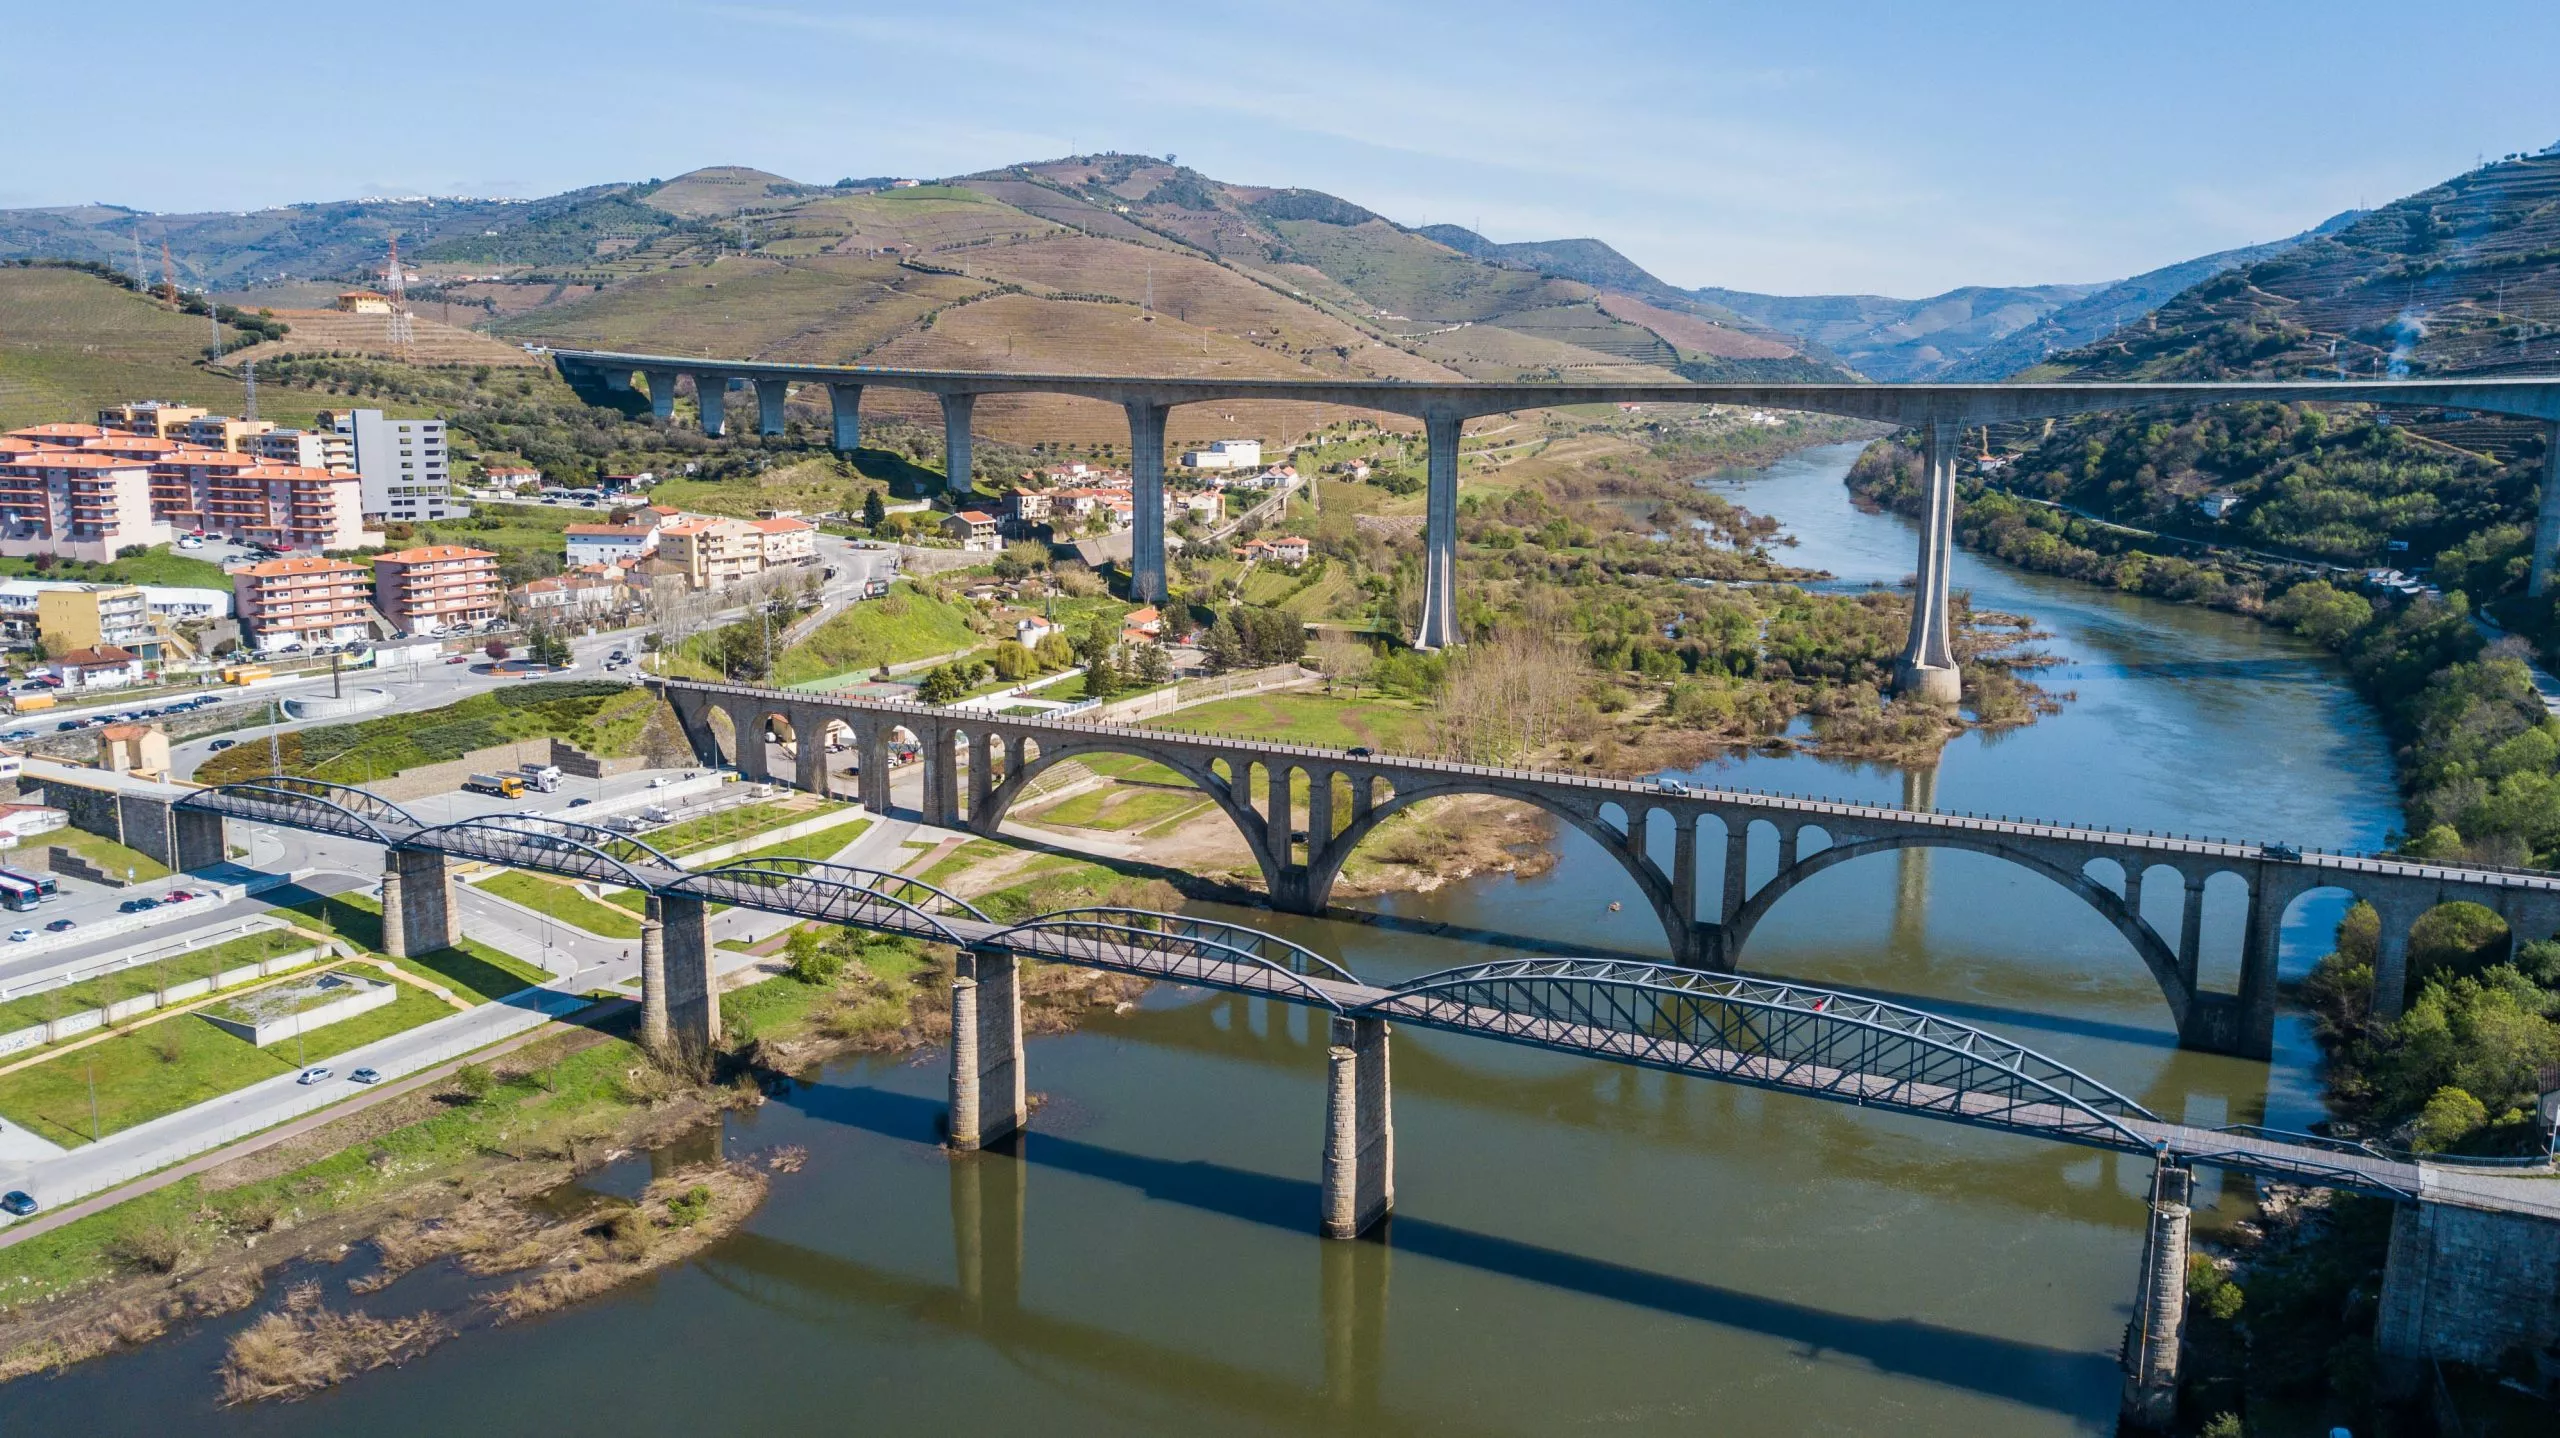 Bridges in the Douro river valley in the city of Peso da Régua, Portugal